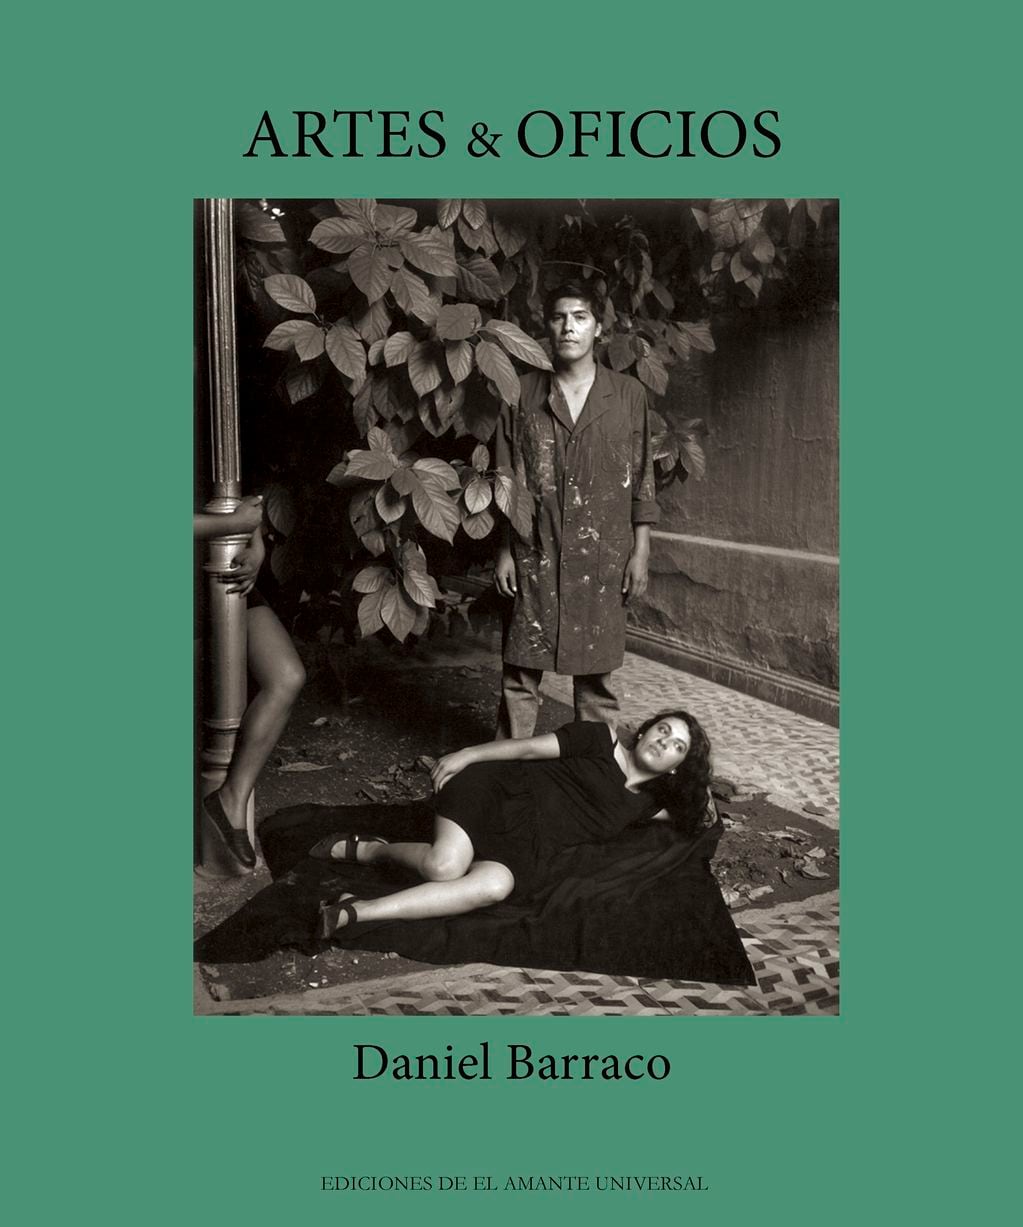 La tapa del libro de Daniel Barraco que indaga desde la fotografía, en la relación del arte y el trabajo.